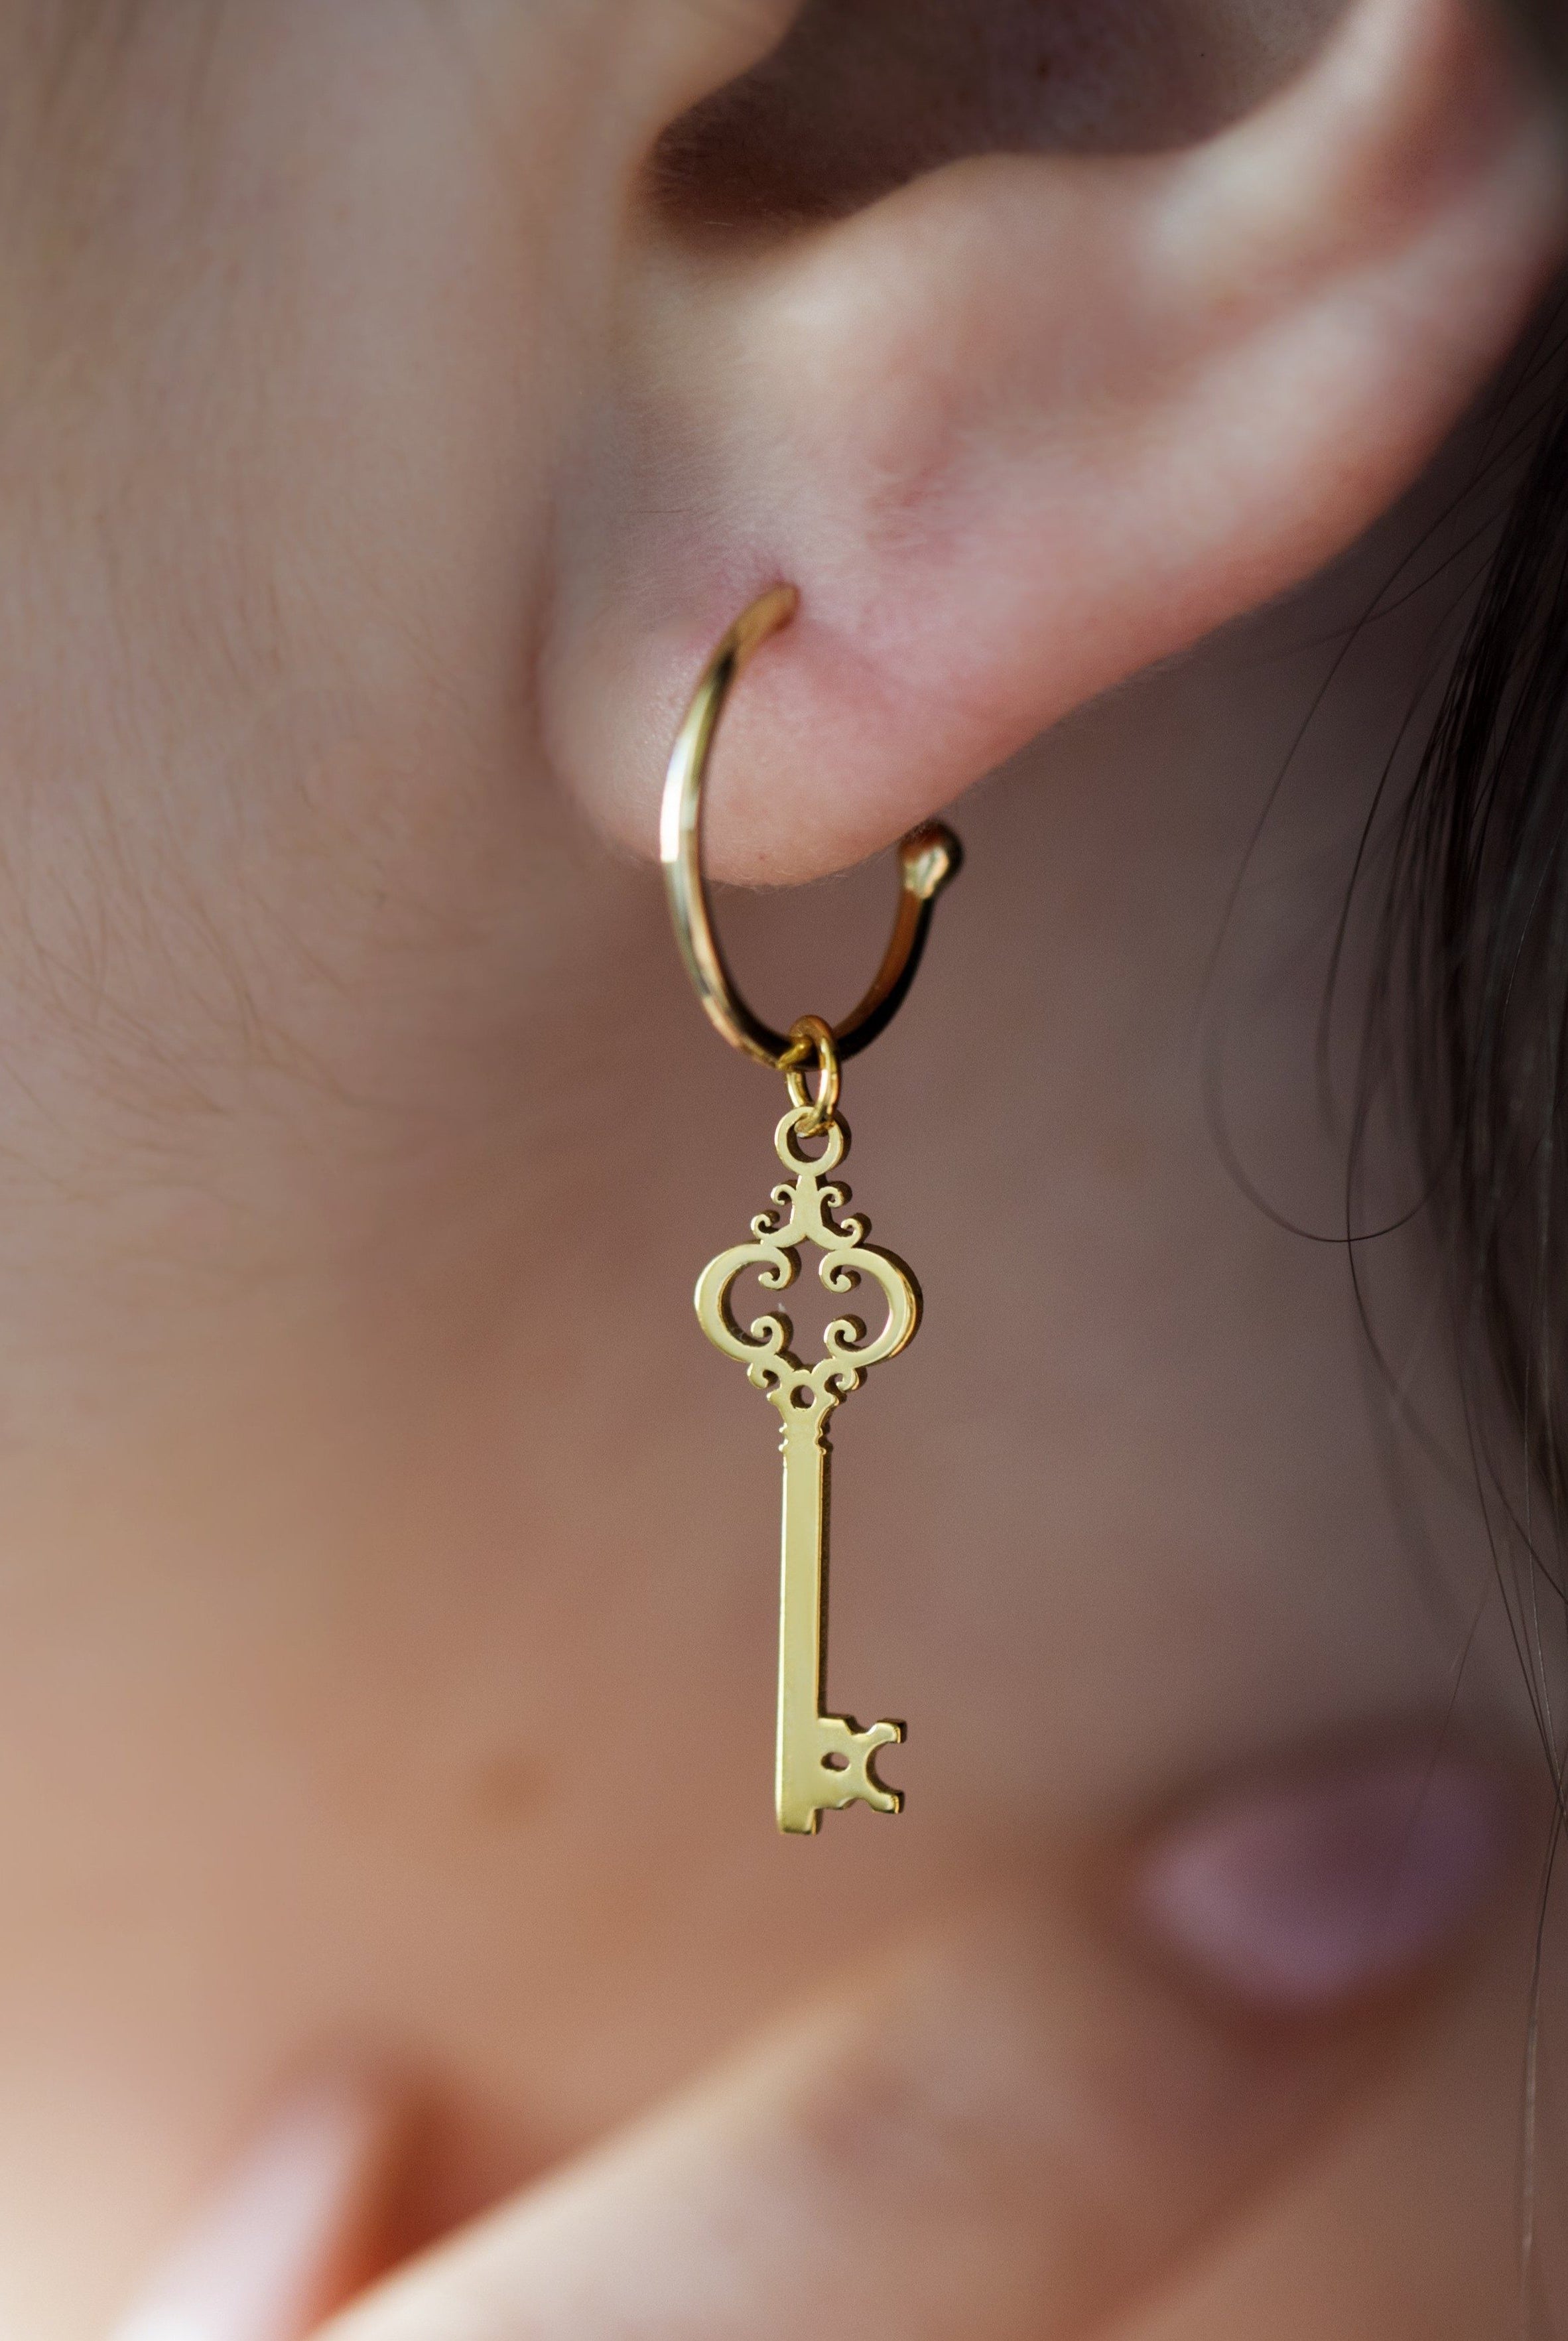 KEY EARRING - Danelian Jewelry